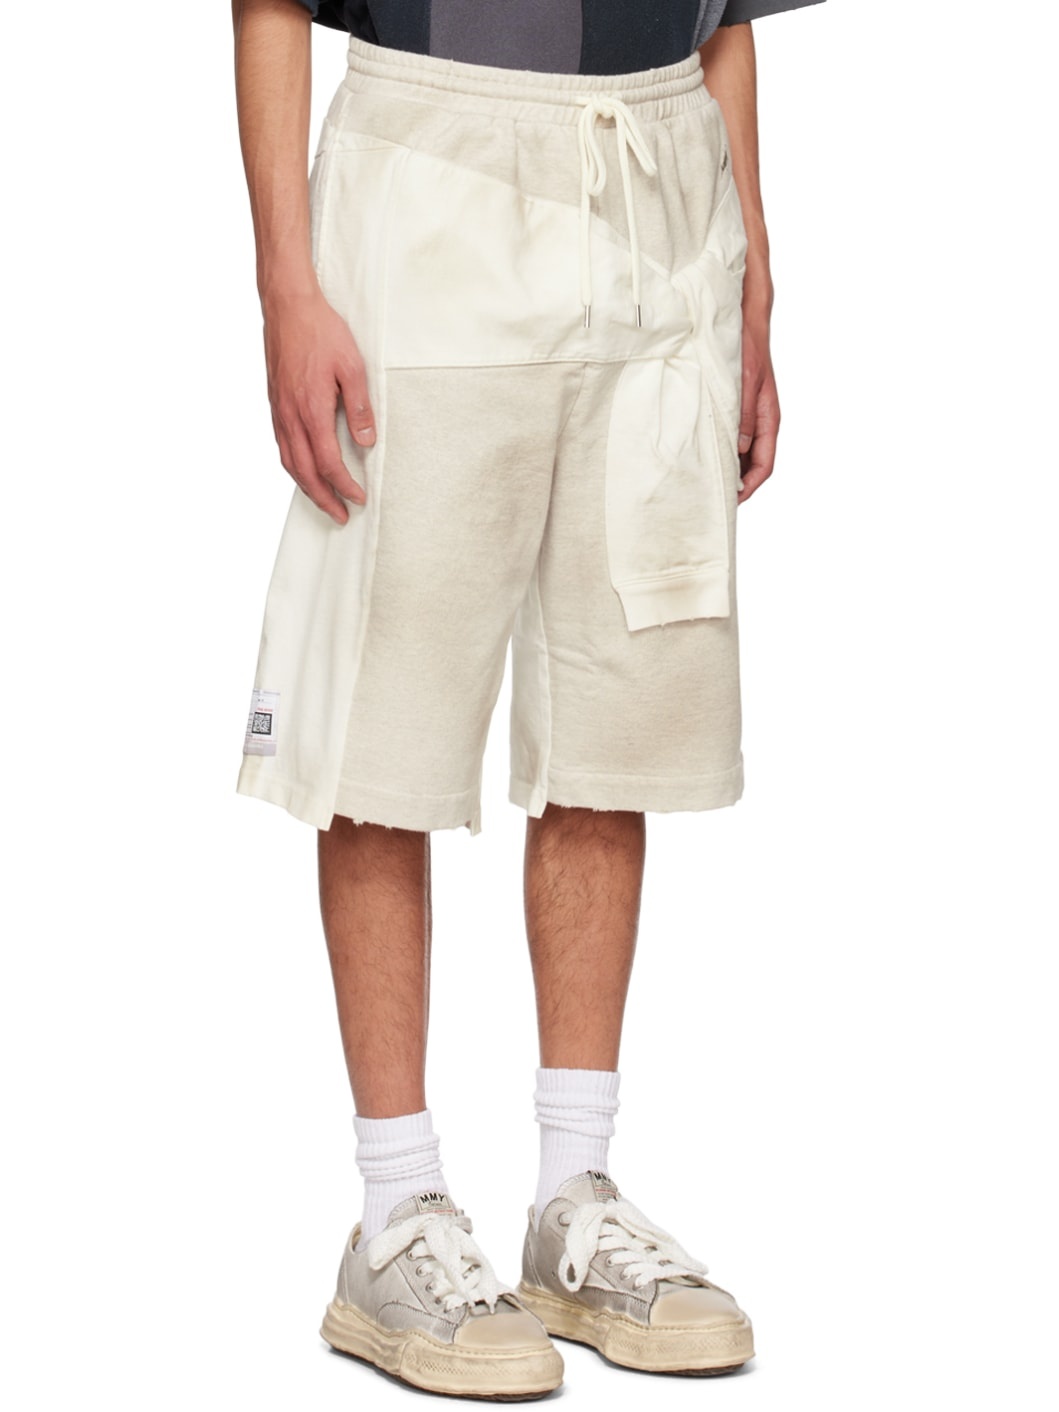 Off-White Paneled Shorts - 2